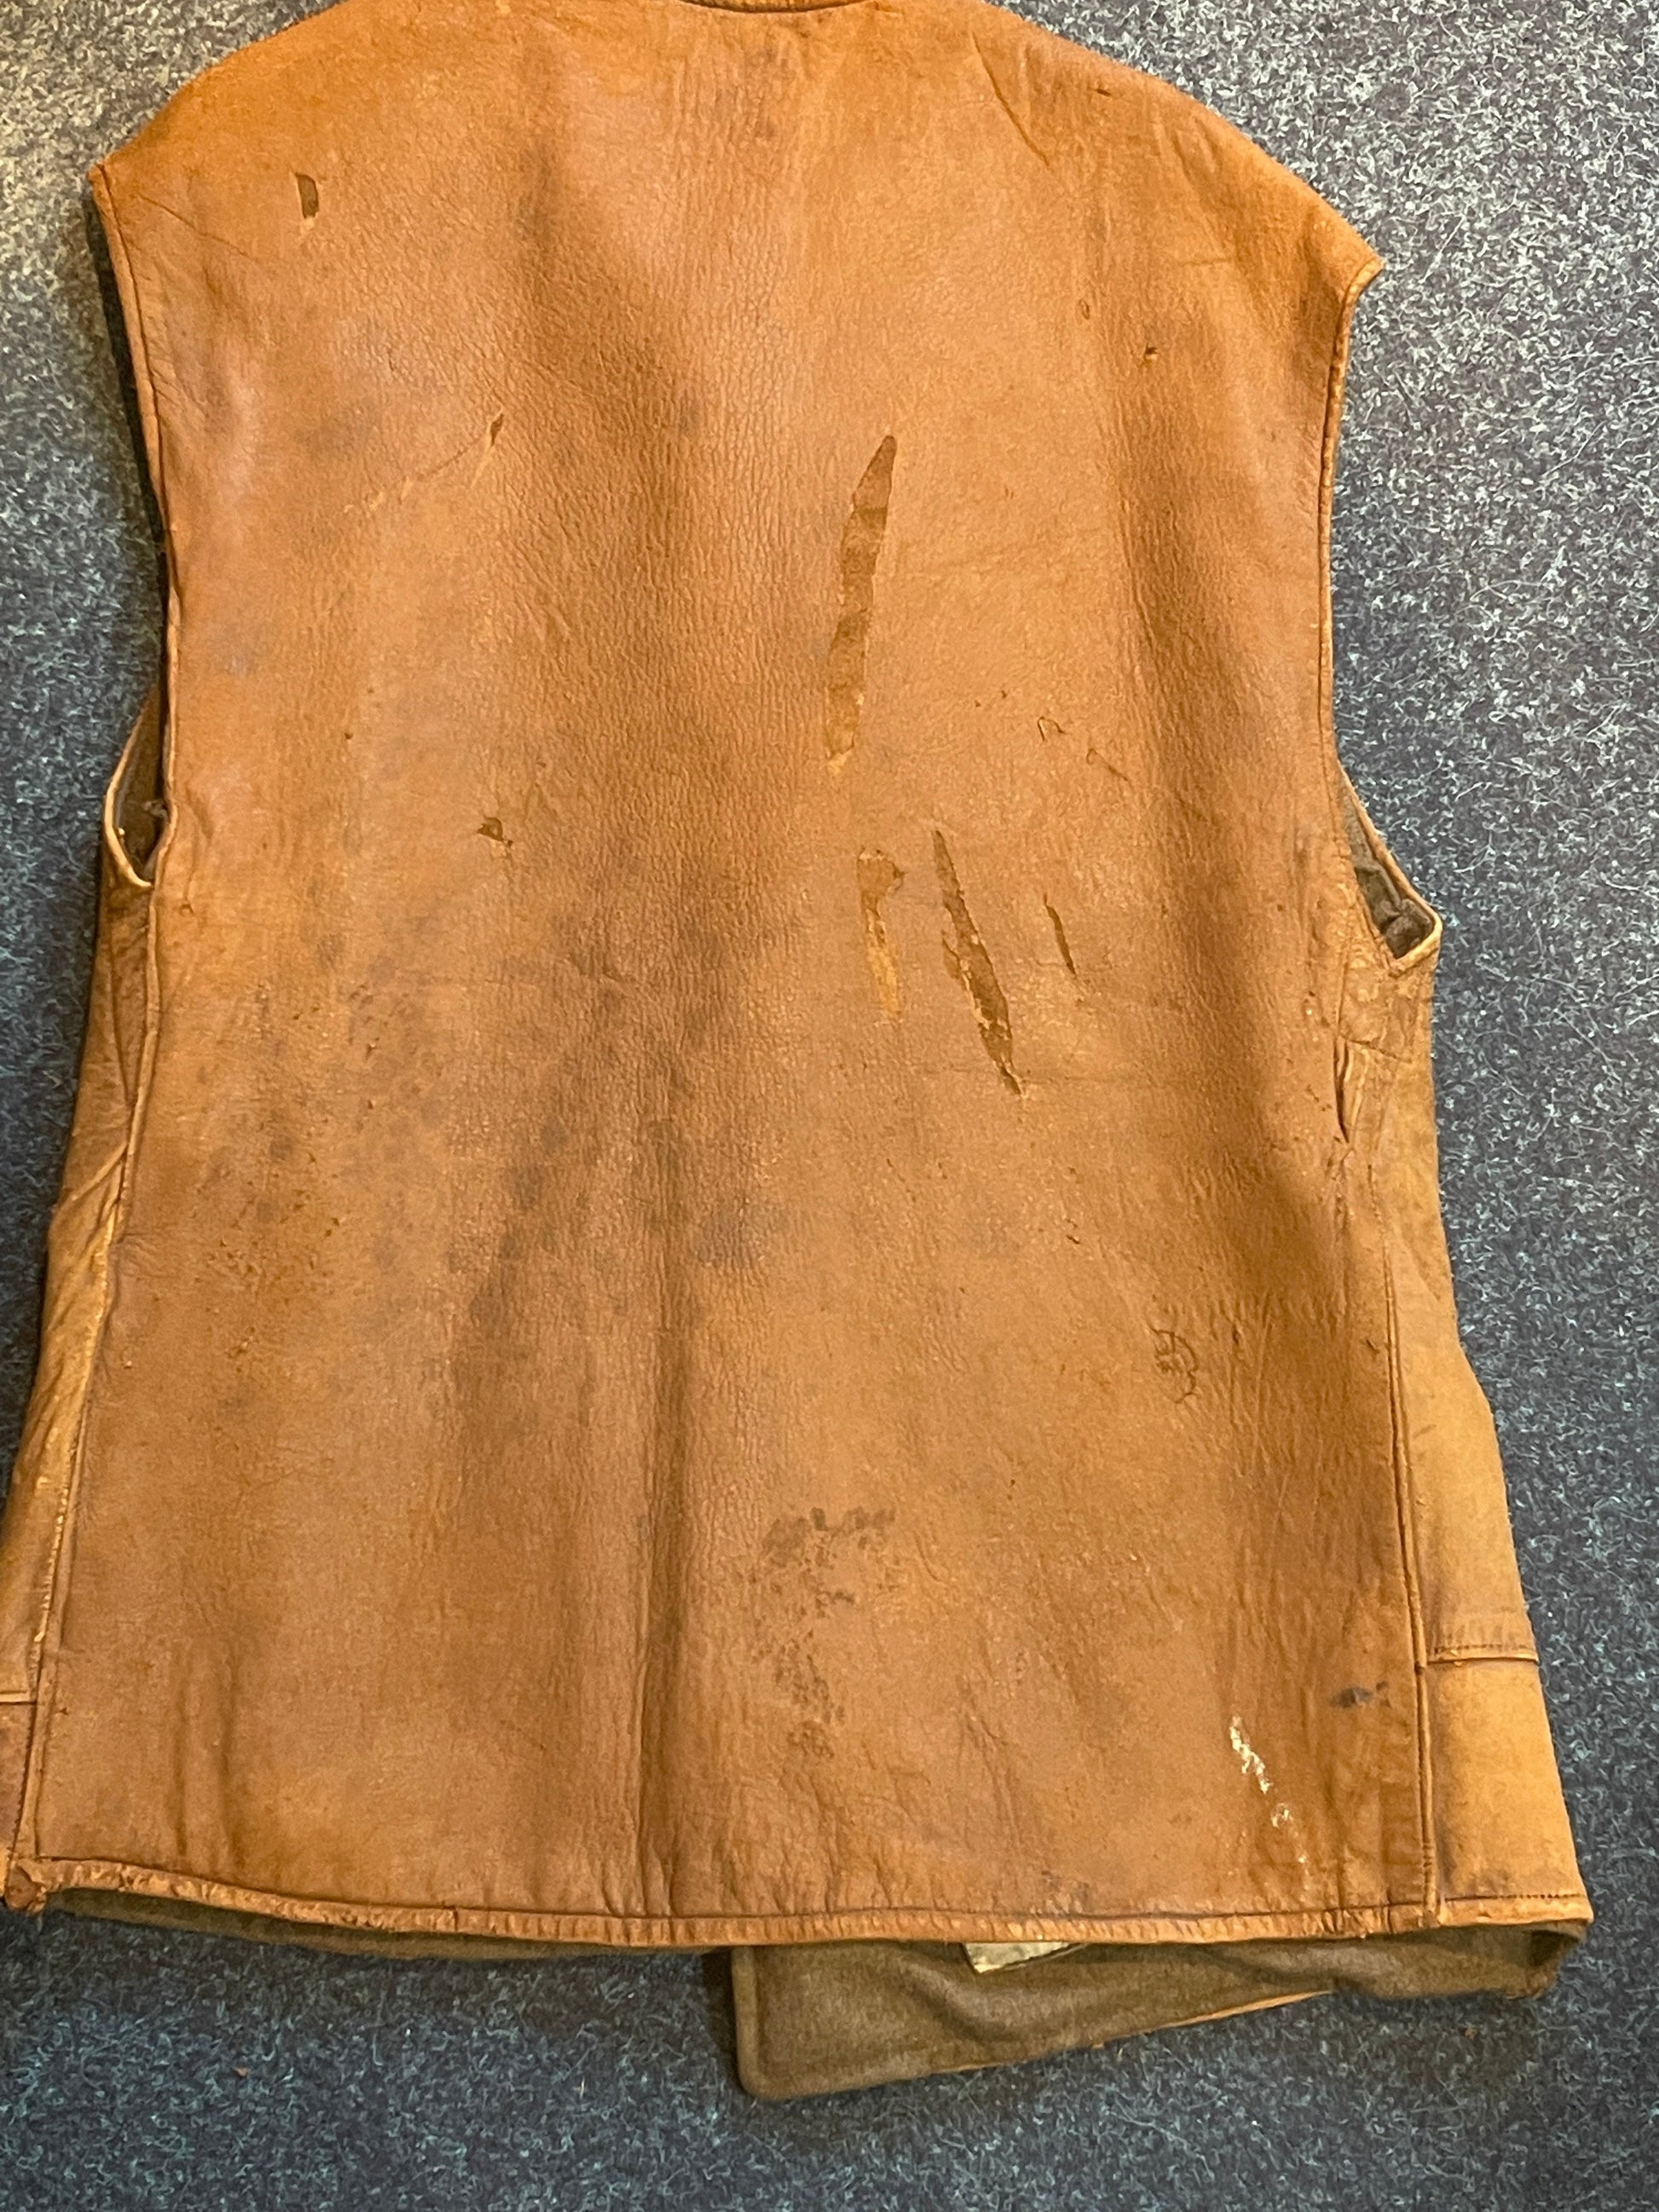 Second World War British Army issue leather jerkin